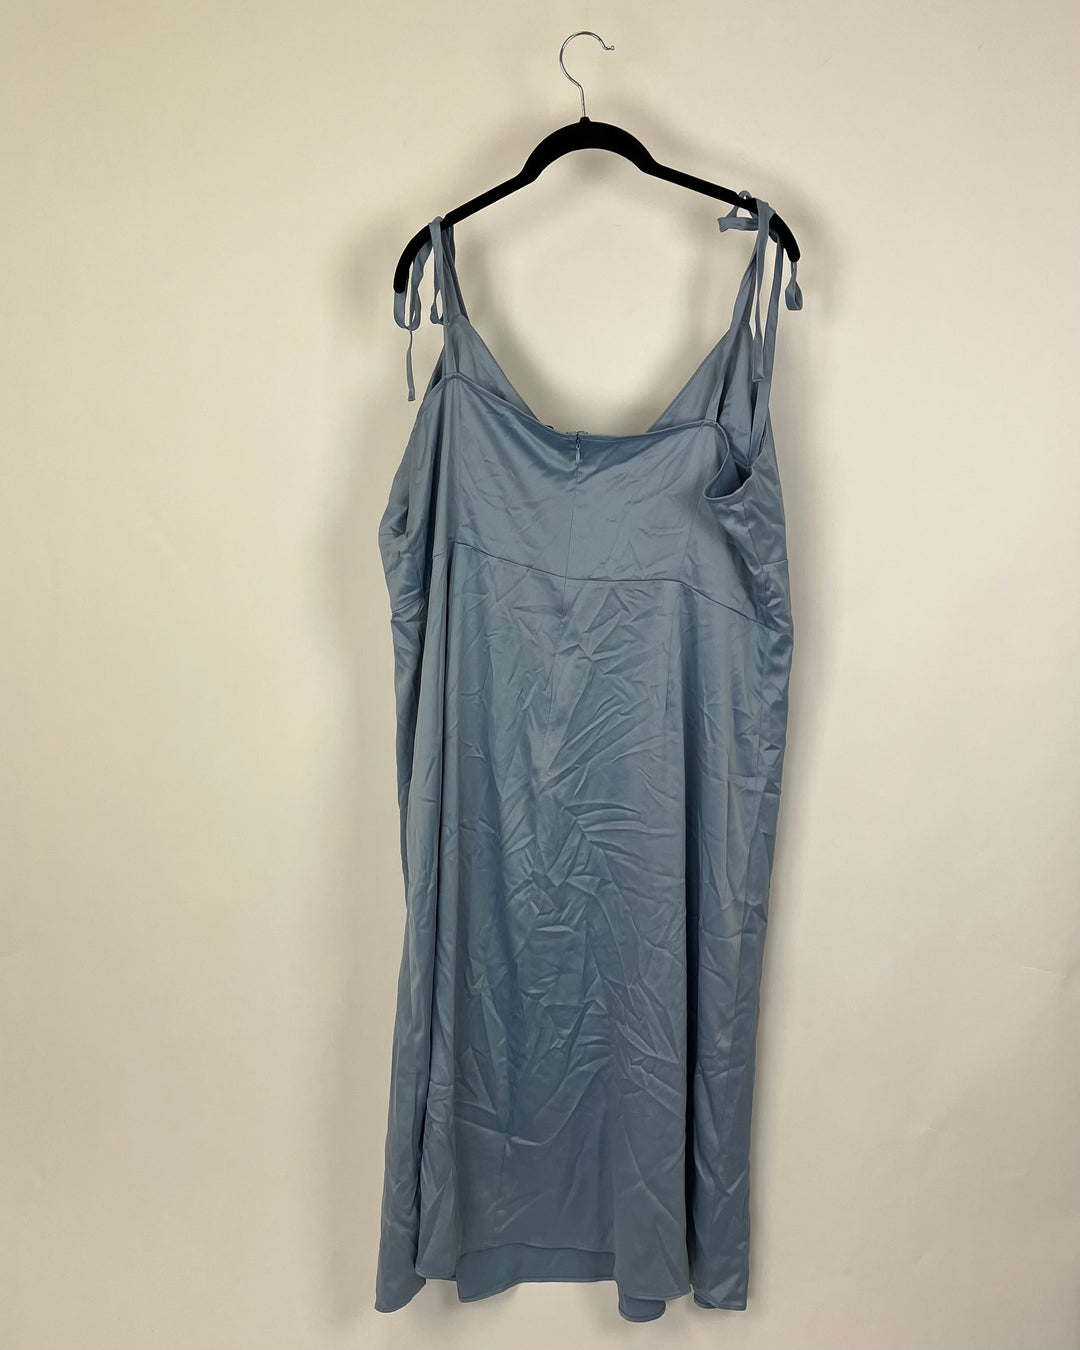 Pale Blue Midi Slip Dress - Size 18W and 20W